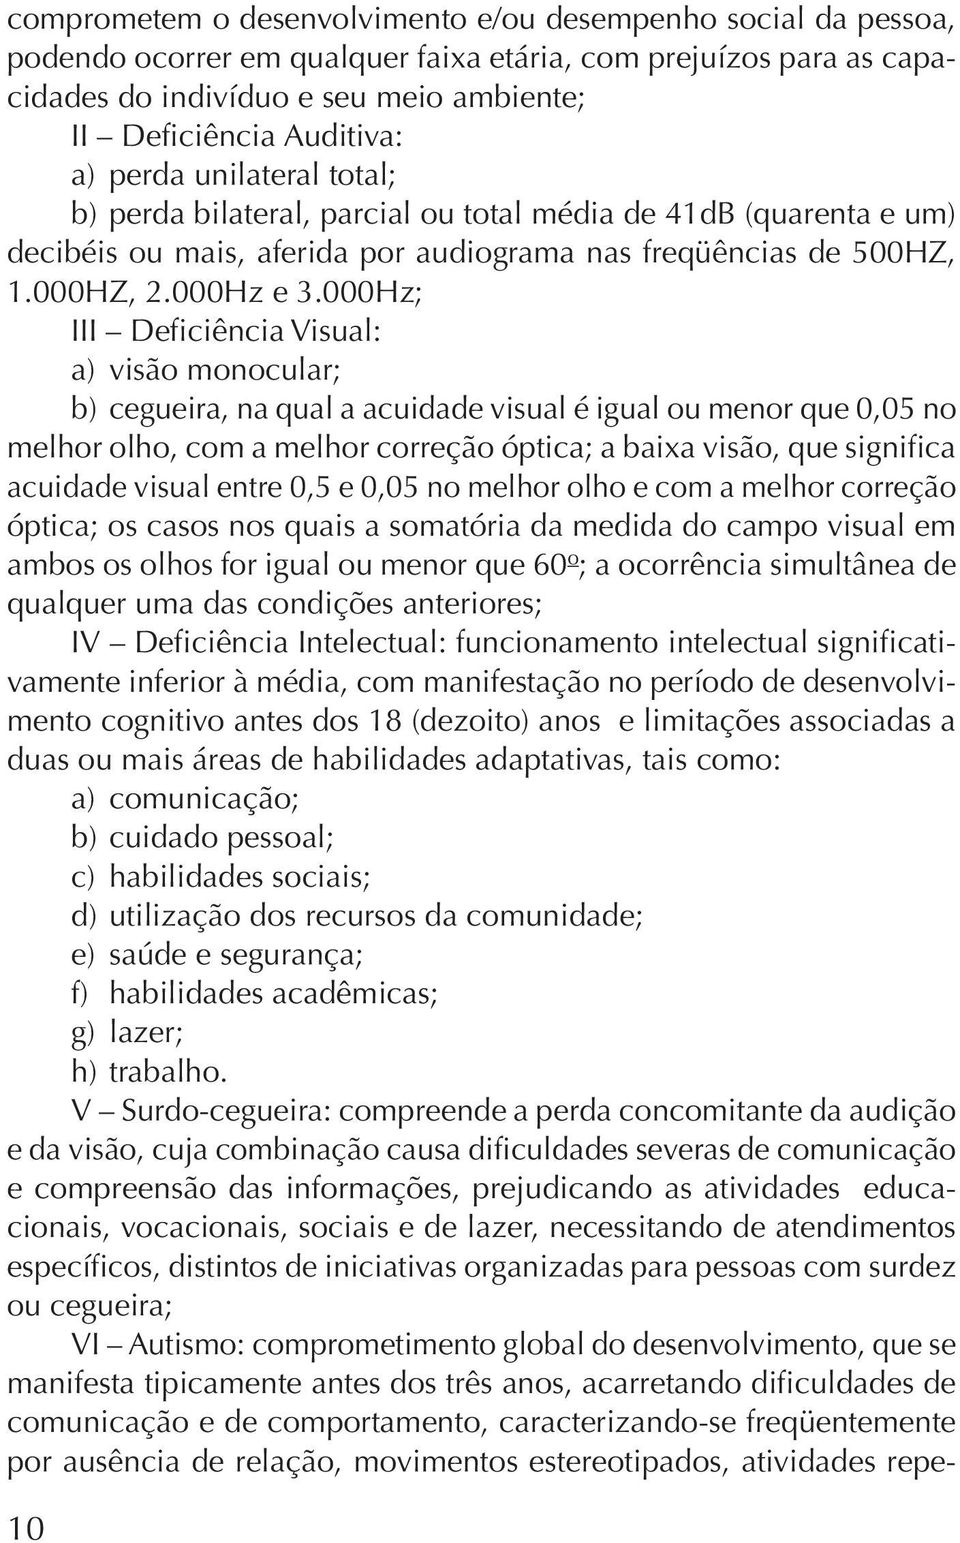 000Hz; III Deficiência Visual: a) visão monocular; b) cegueira, na qual a acuidade visual é igual ou menor que 0,05 no melhor olho, com a melhor correção óptica; a baixa visão, que significa acuidade